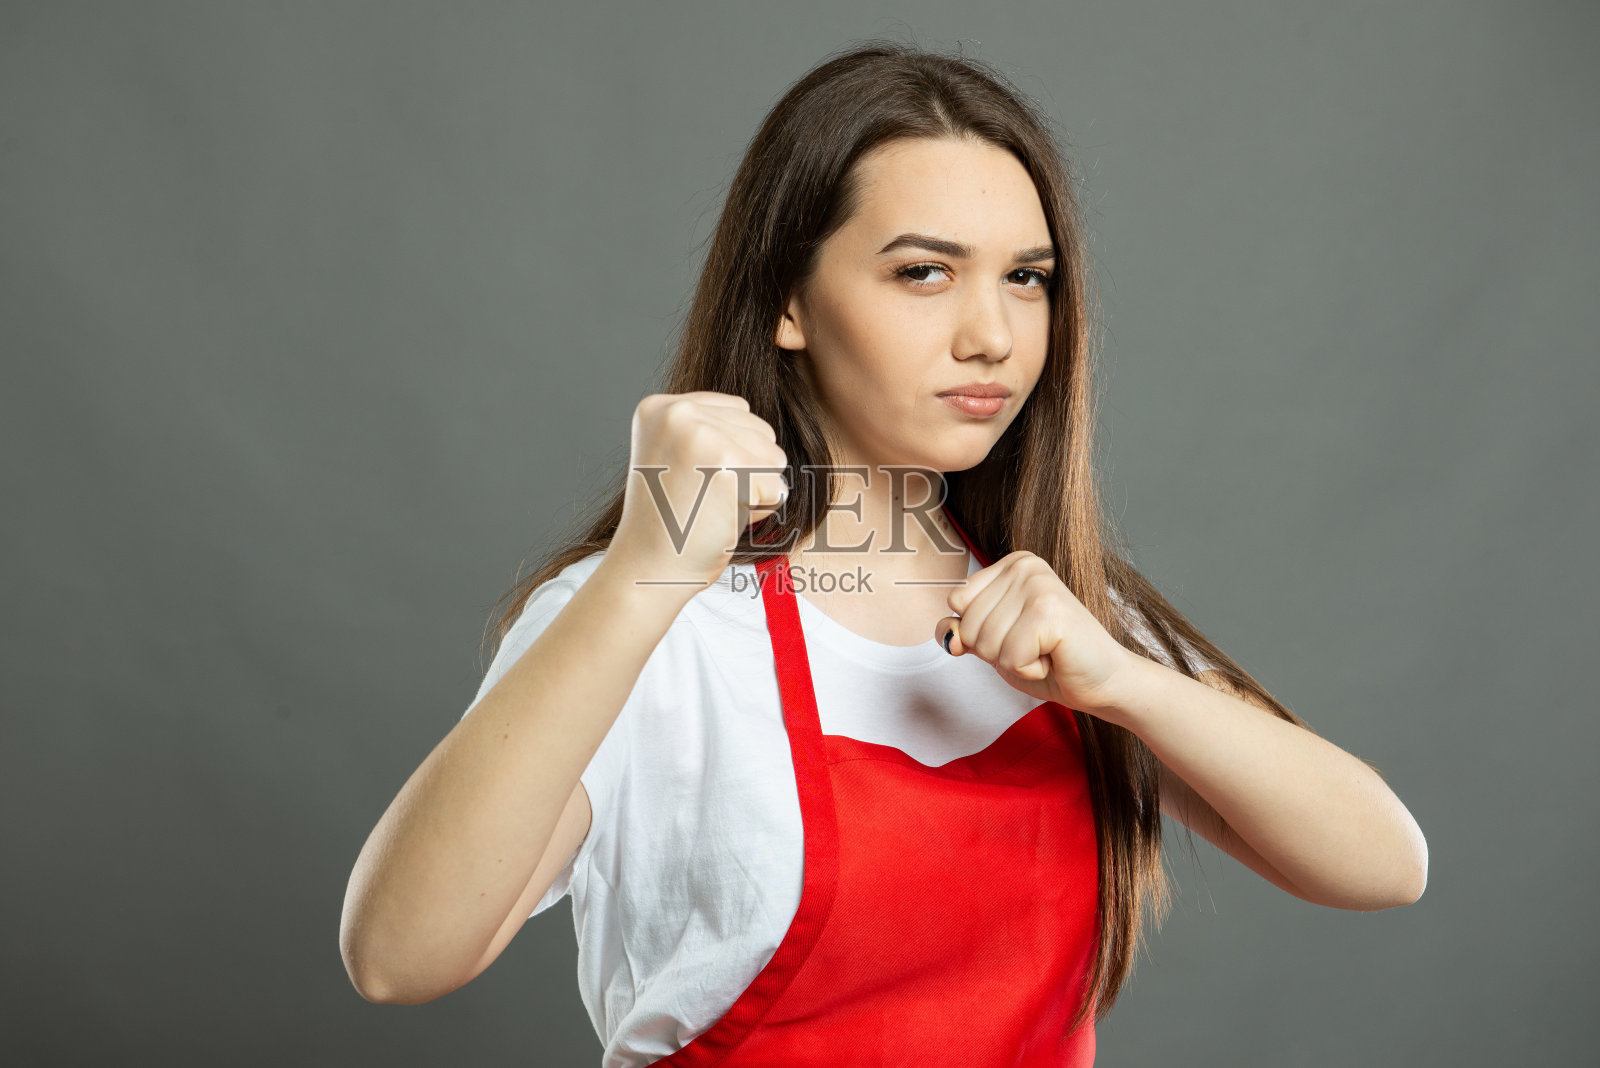 年轻的女超市员工展示拳头看起来很疯狂的肖像照片摄影图片